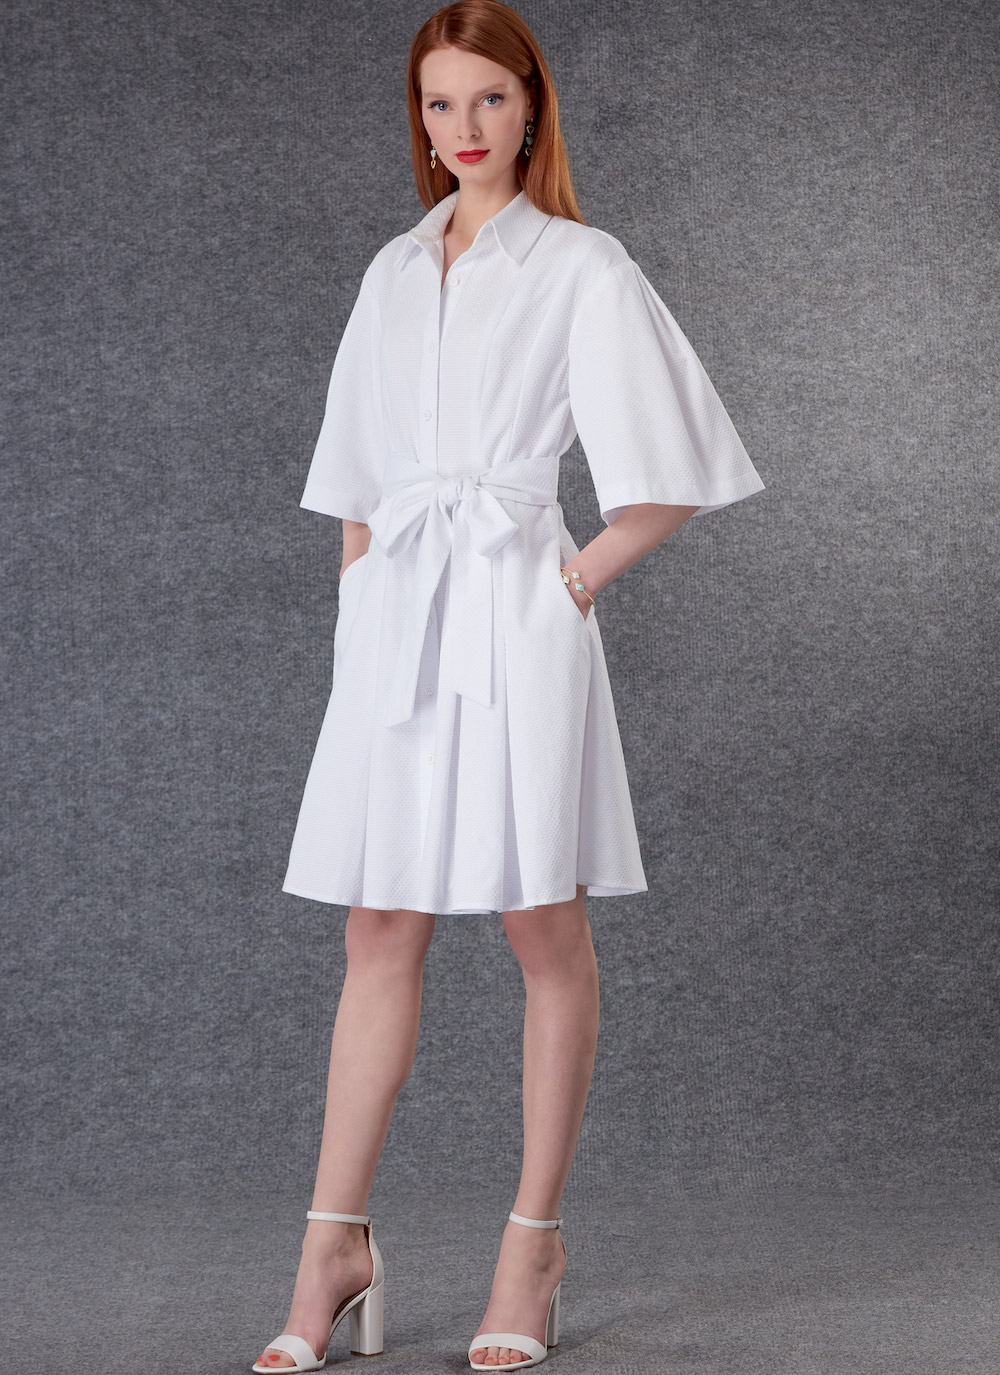 Vogue® Patterns Papierschnittmuster Damen - Kleid - V1783